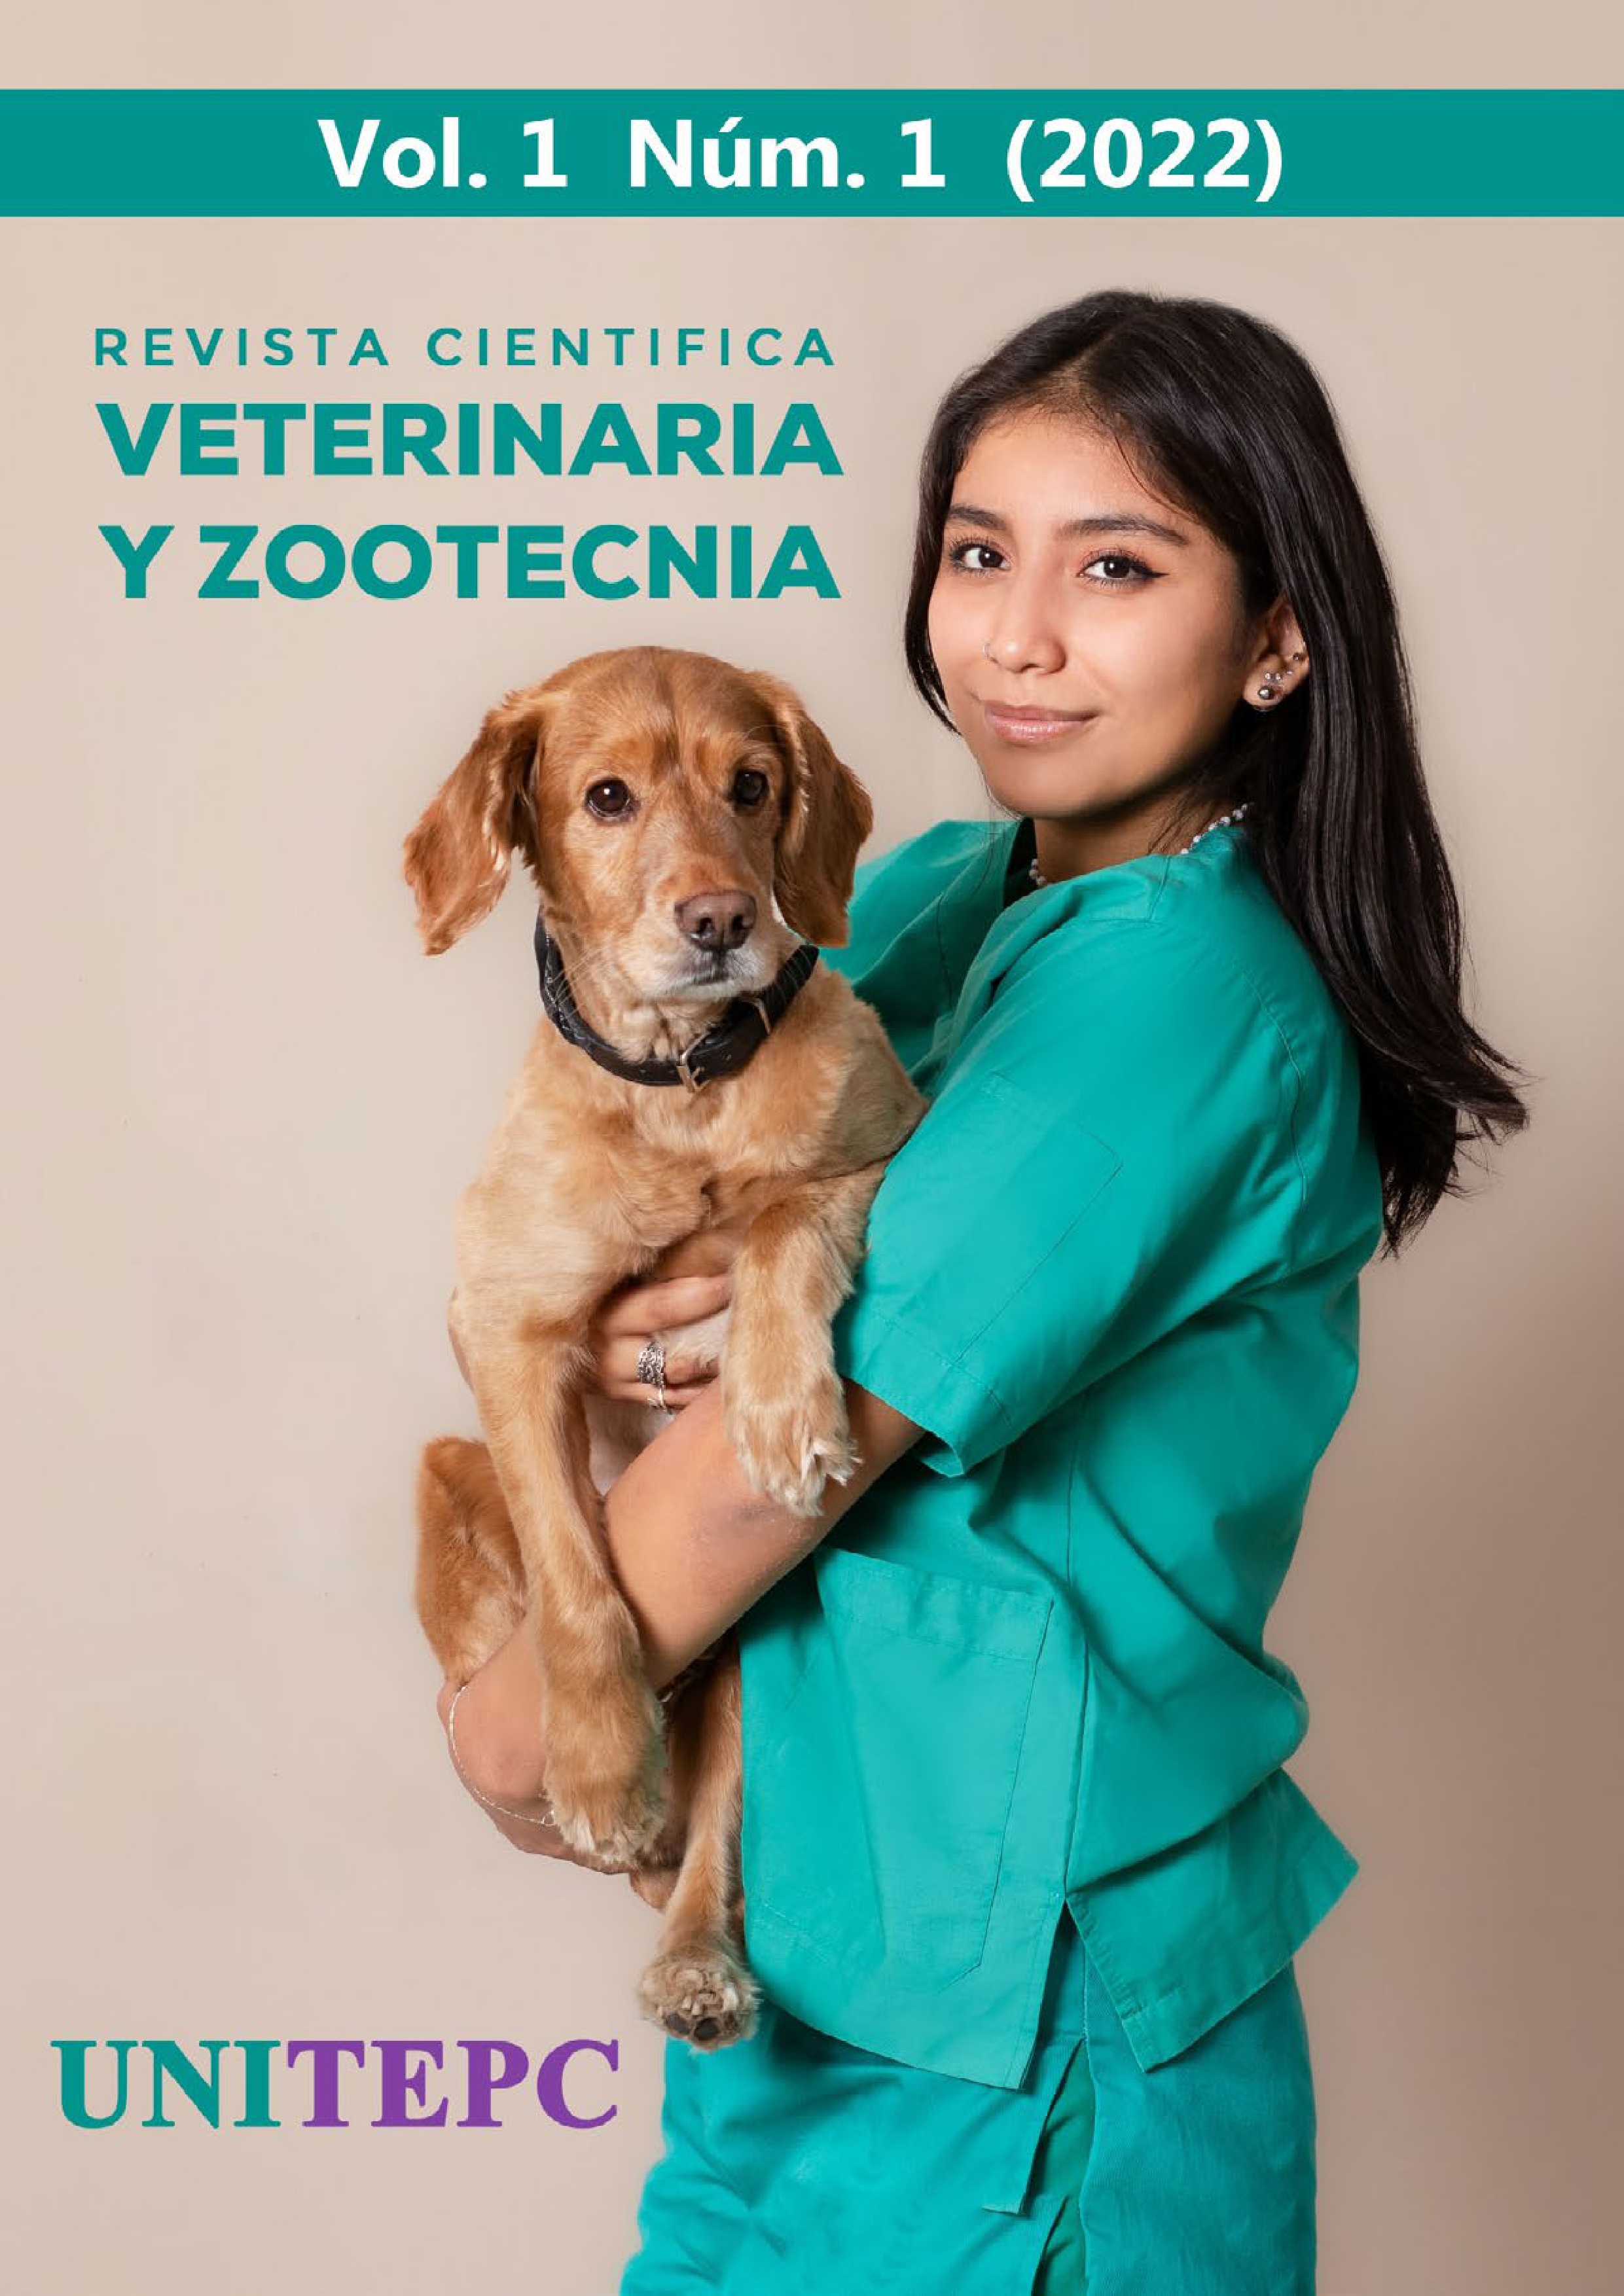 					Visualizar v. 1 n. 1 (2022): Revista Científica de Veterinaria y Zootecnia UNITEPC
				